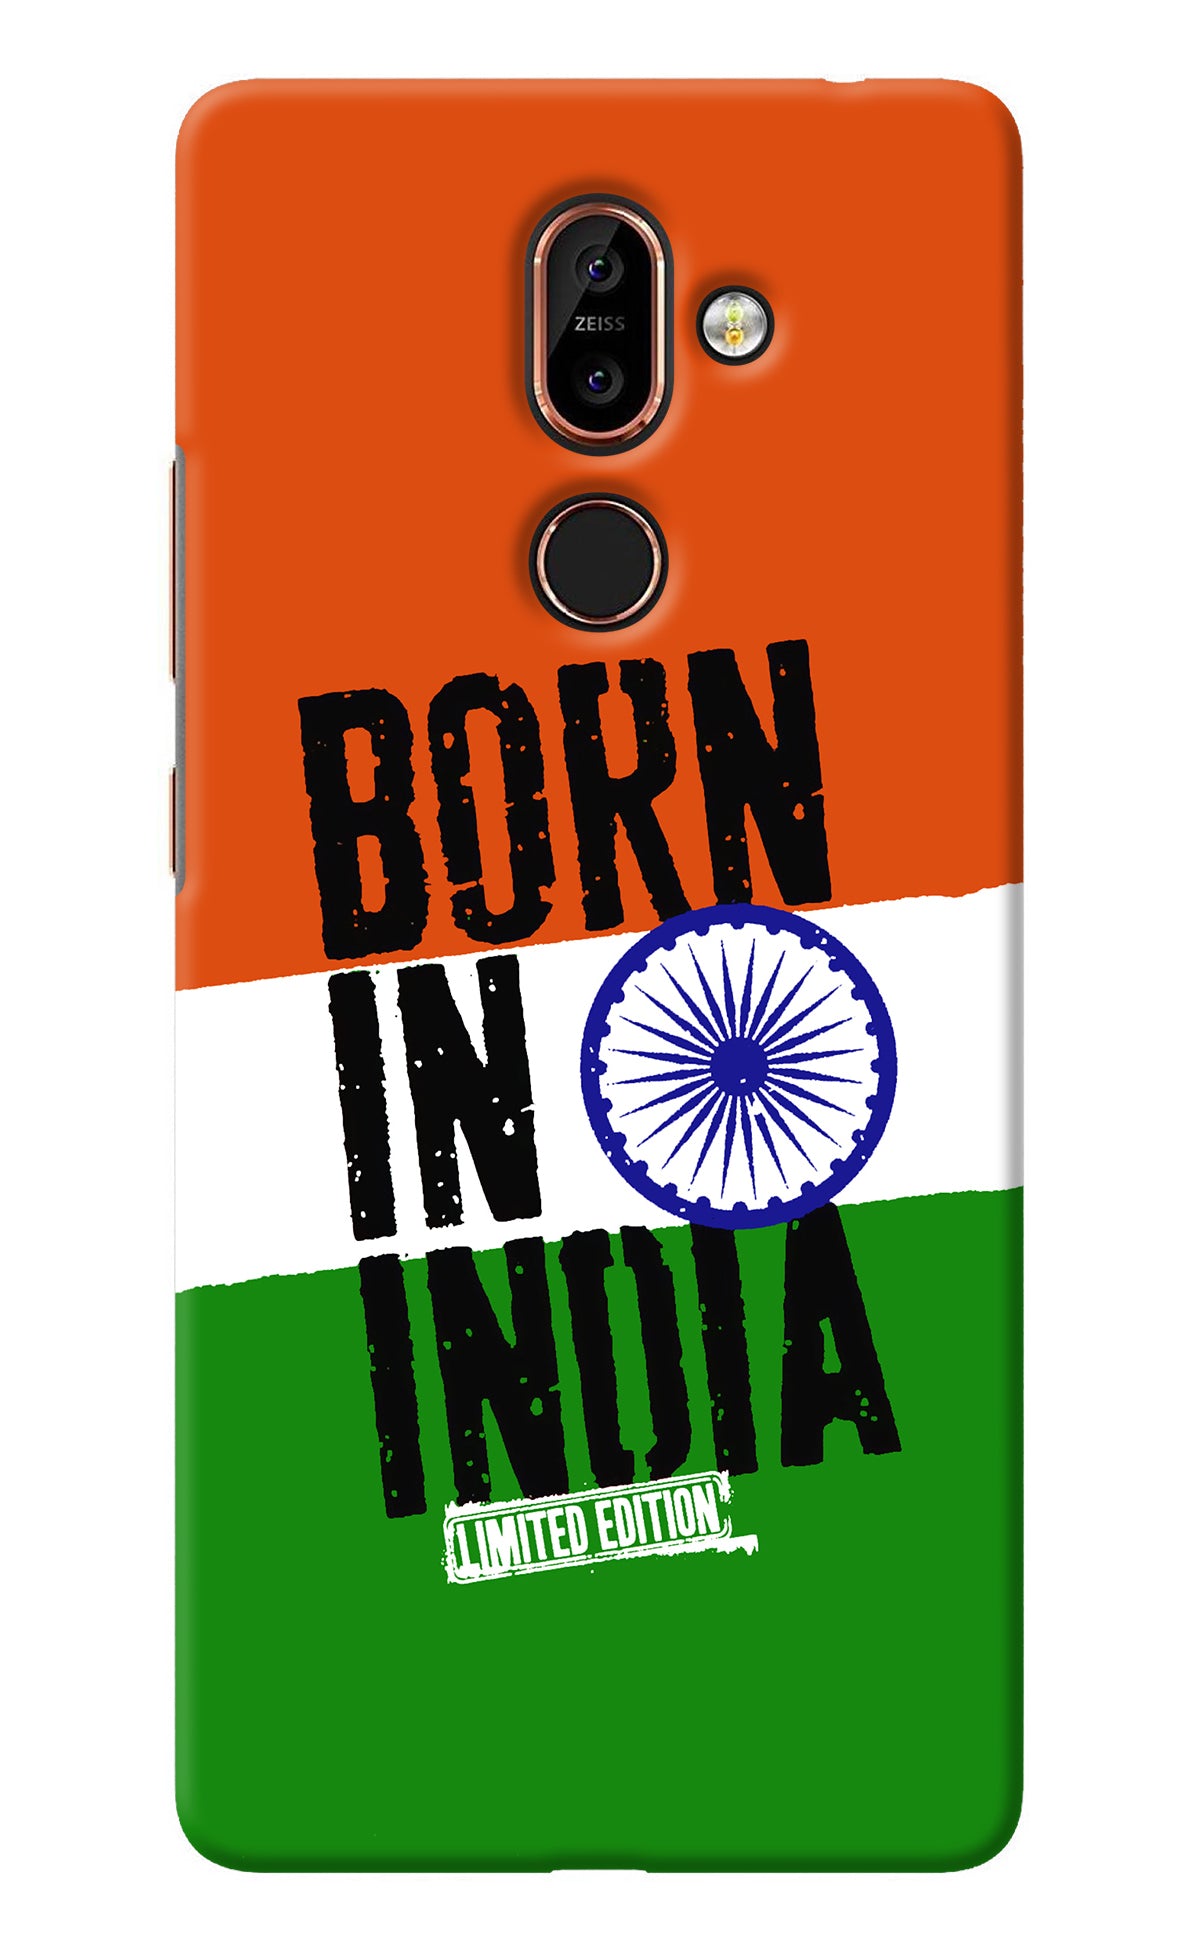 Born in India Nokia 7 Plus Back Cover